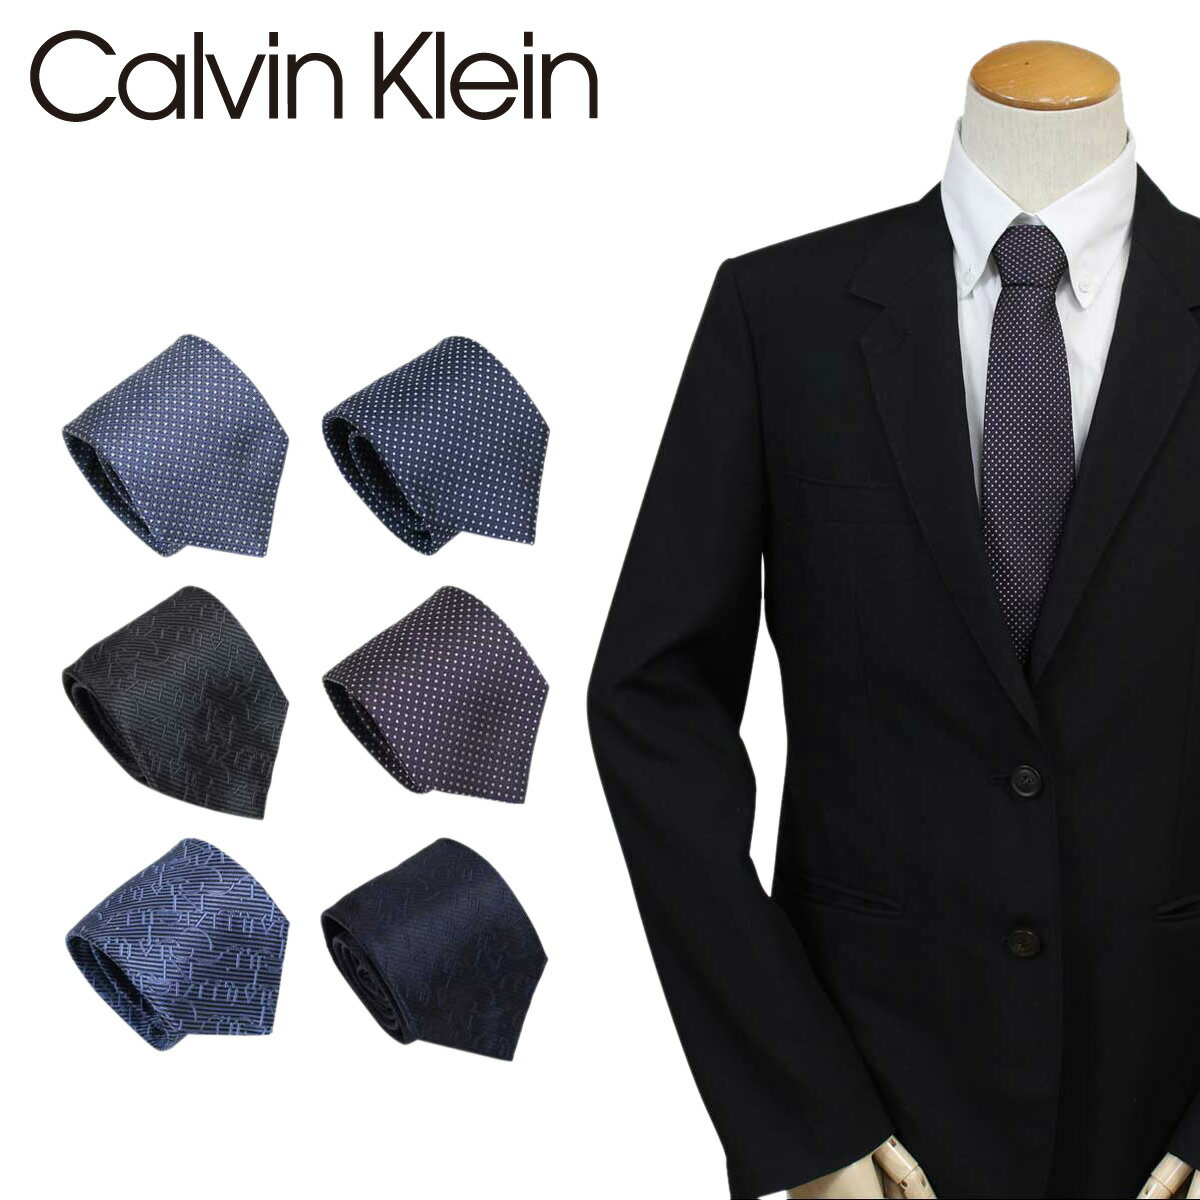 カルバン・クライン ネクタイ カルバンクライン Calvin Klein ネクタイ シルク メンズ CK ビジネス 結婚式 ブランド